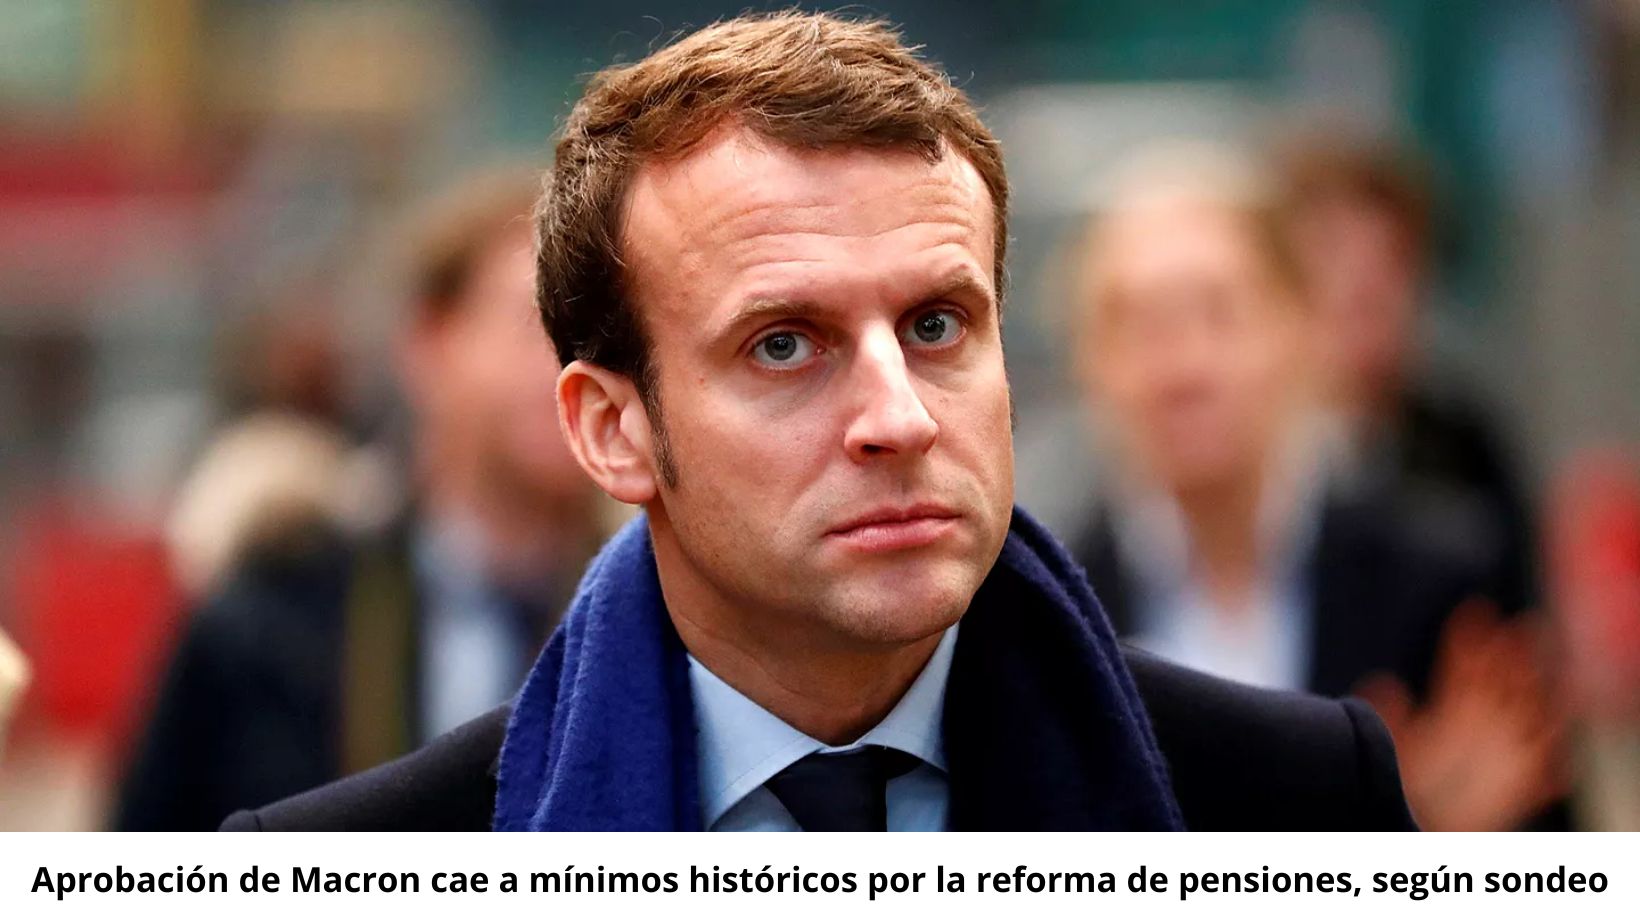 Aprobación de Macron cae a mínimos históricos por la reforma de pensiones, según sondeo